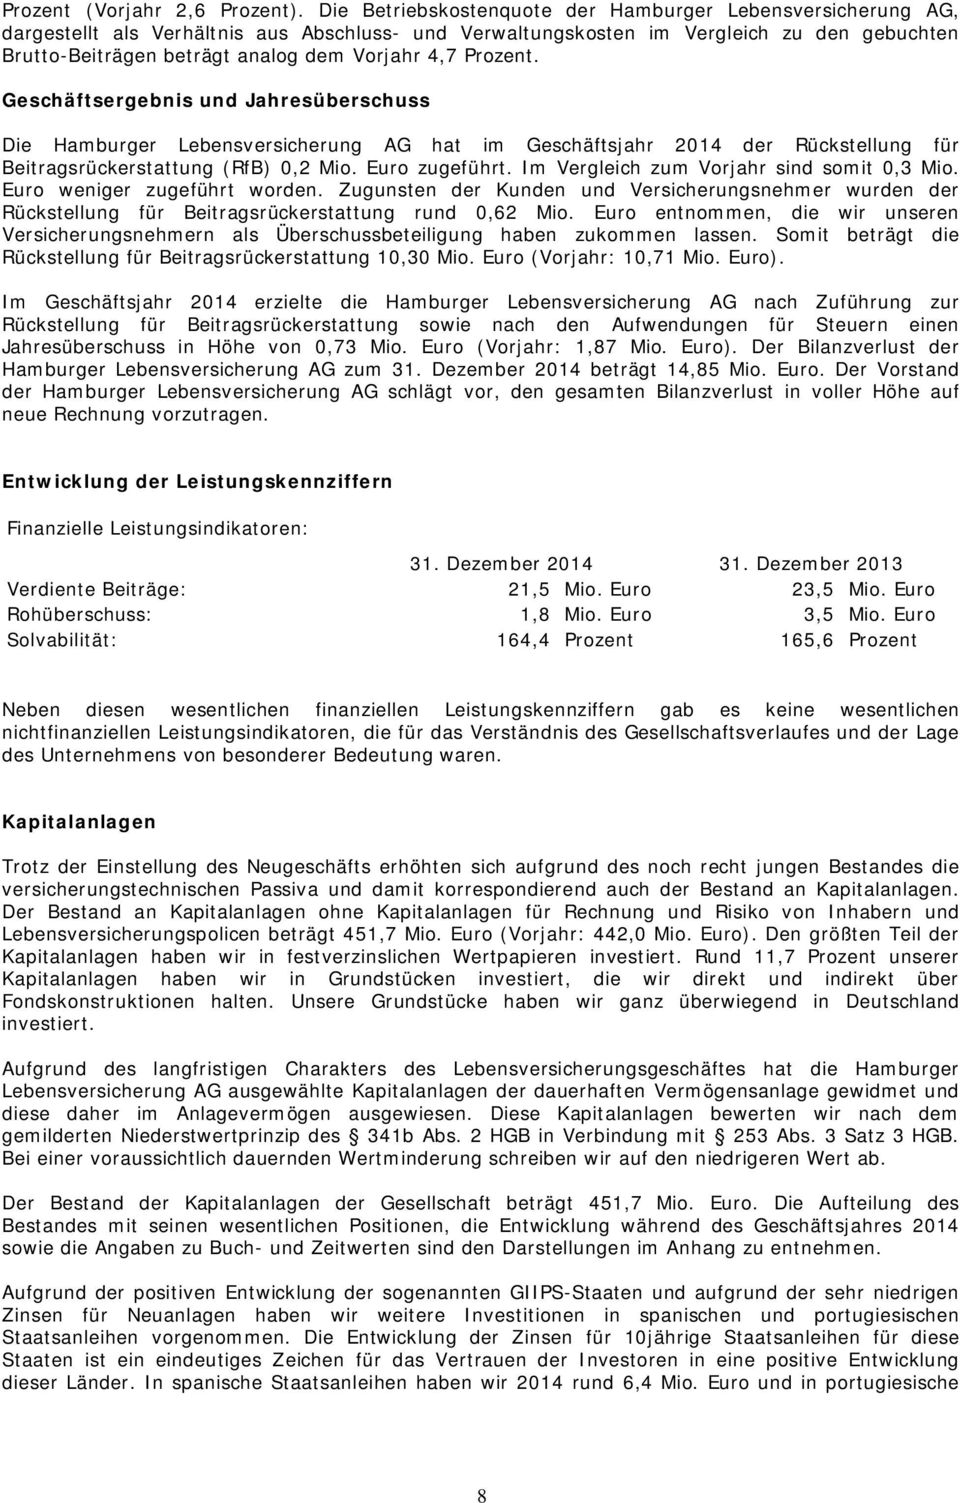 4,7 Prozent. Geschäftsergebnis und Jahresüberschuss Die Hamburger Lebensversicherung AG hat im Geschäftsjahr 2014 der Rückstellung für Beitragsrückerstattung (RfB) 0,2 Mio. Euro zugeführt.